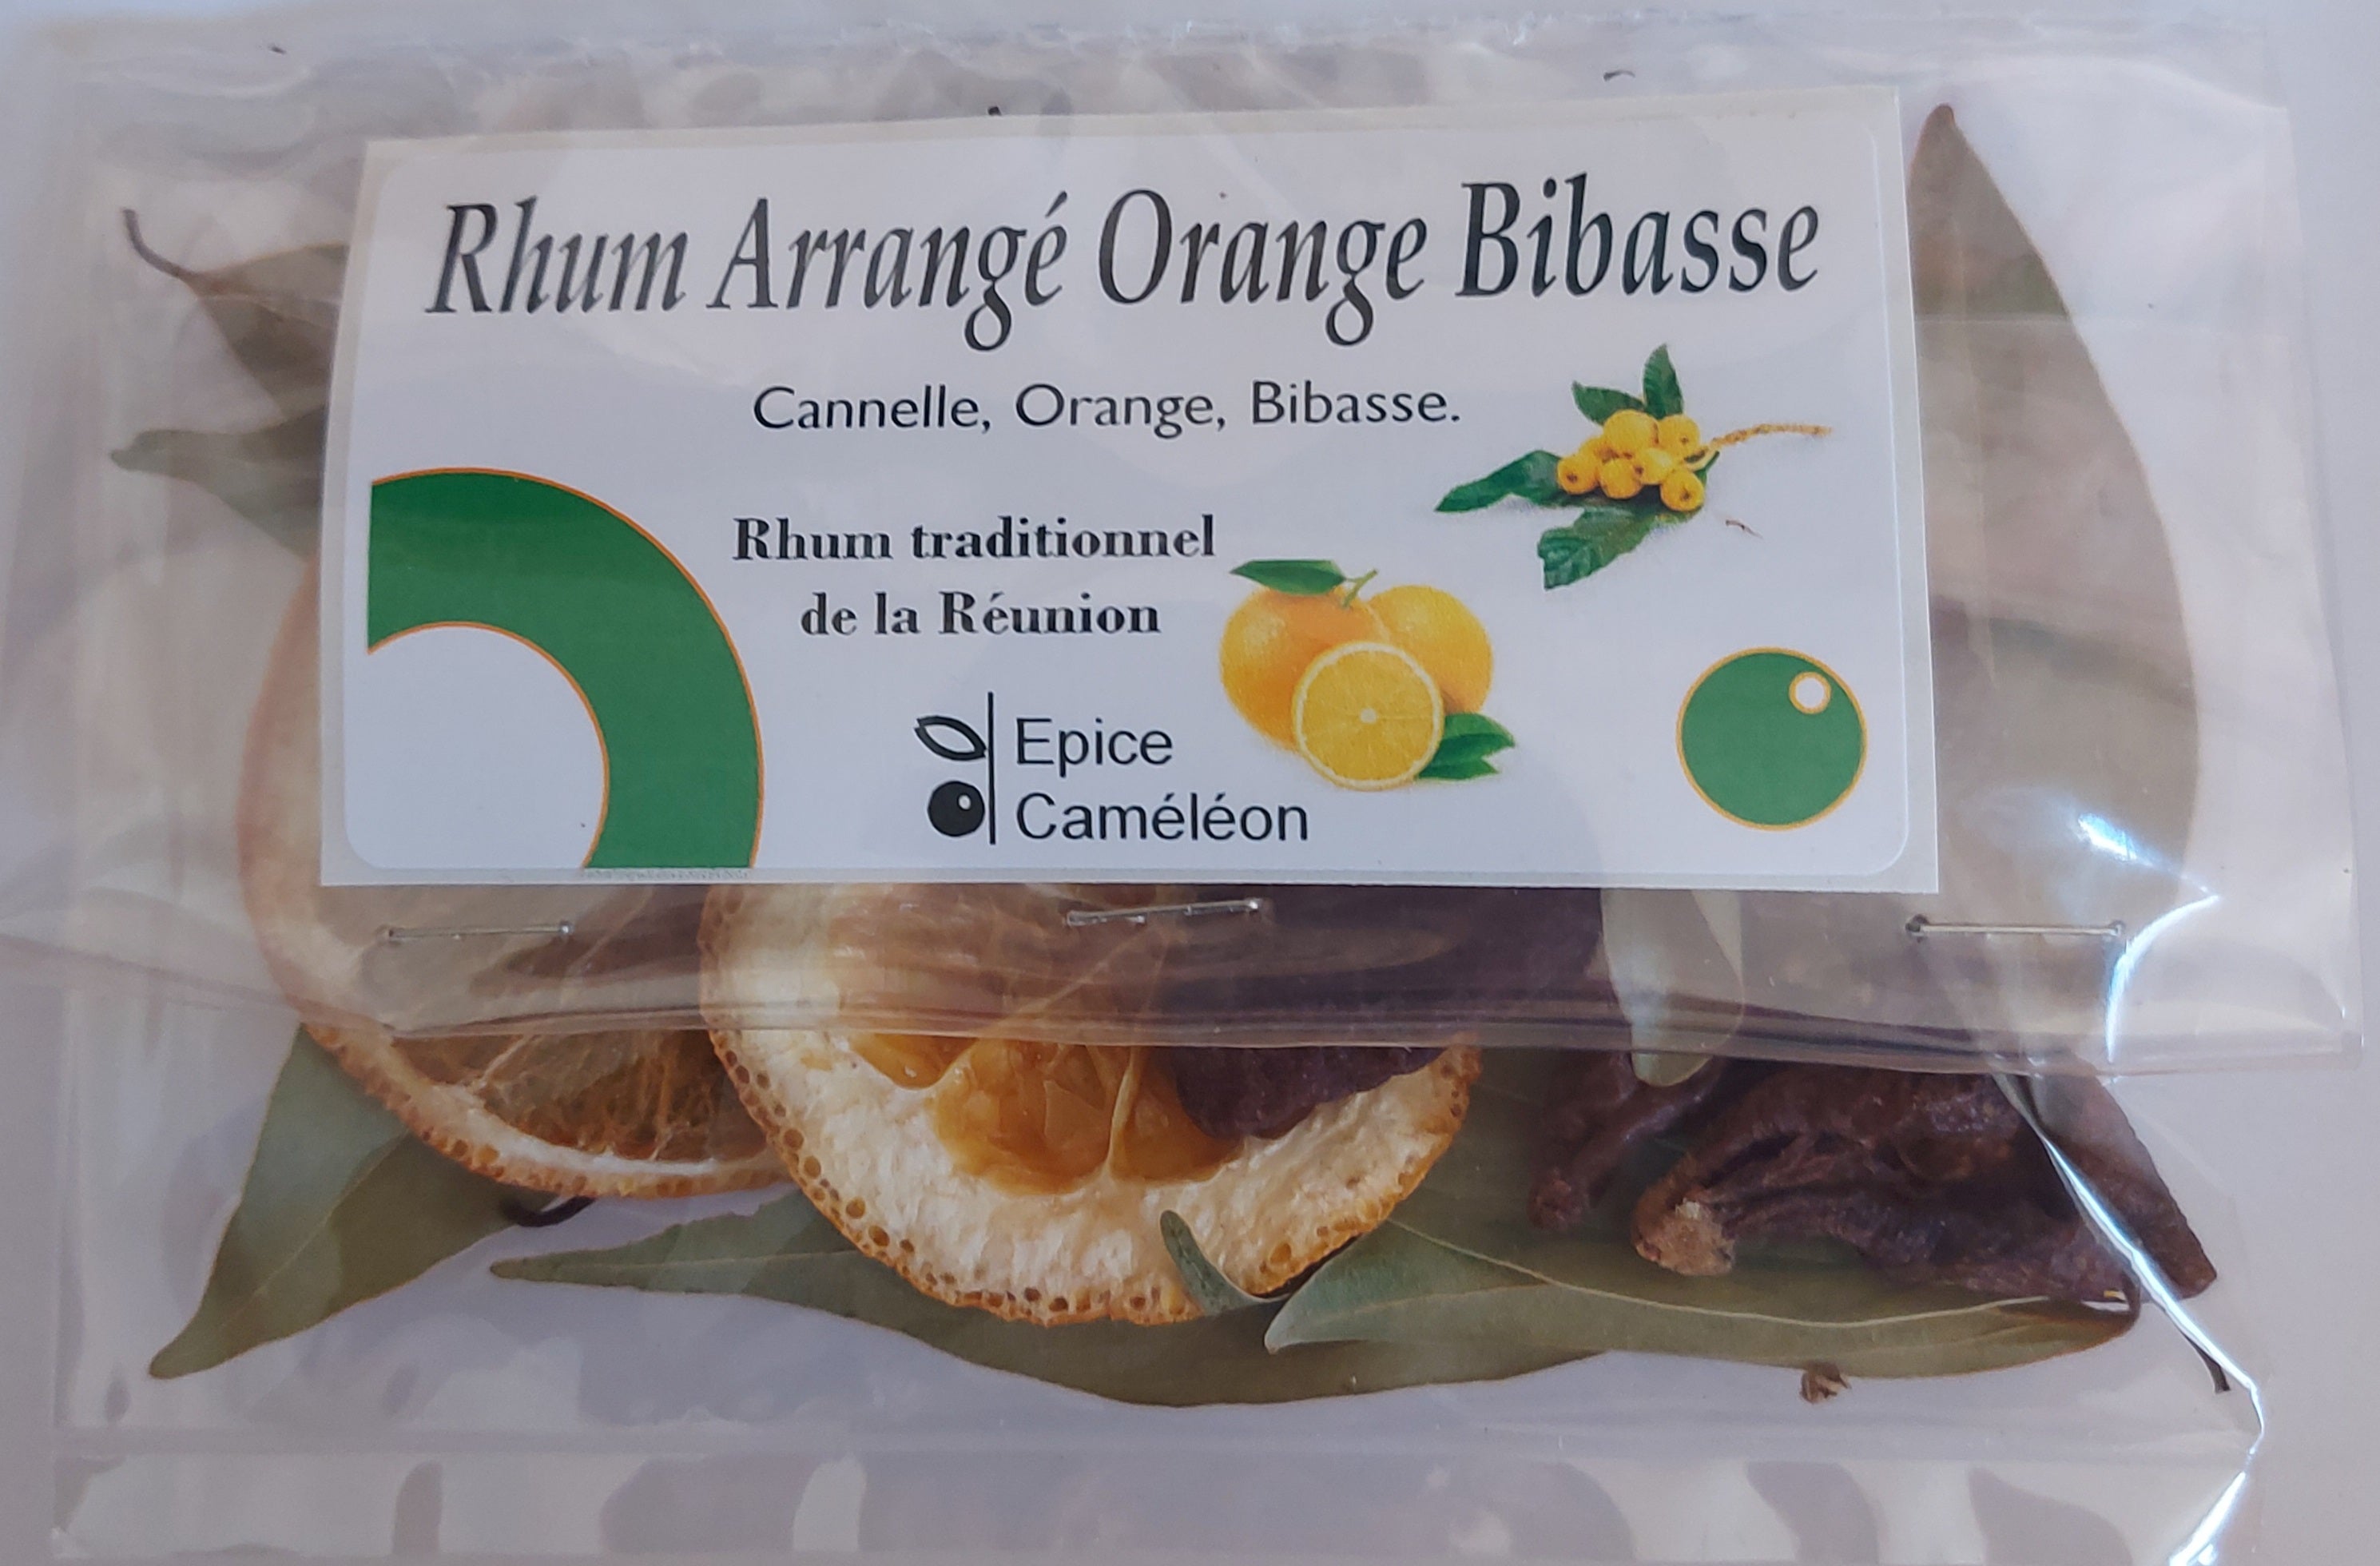 Rhum Arrangé orange bibasse